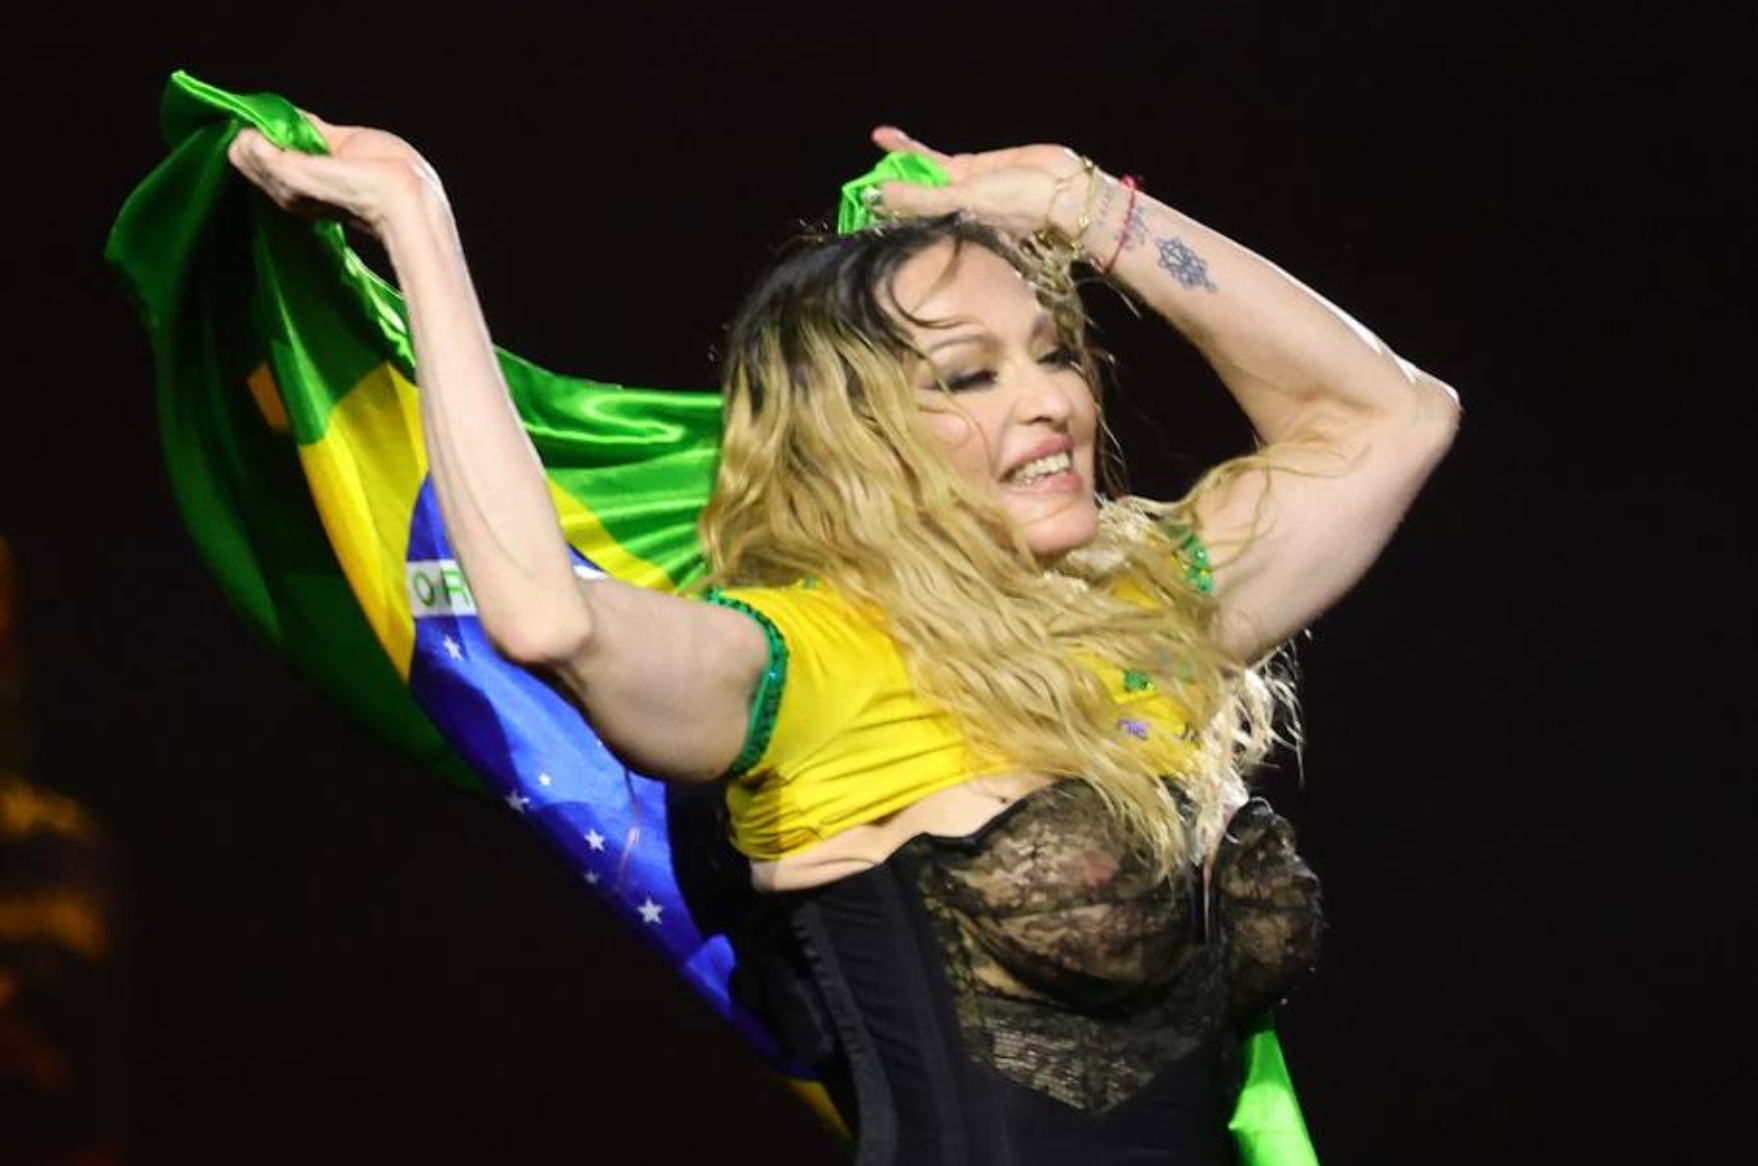 Imprensa internacional repercute show histórico de Madonna no Rio